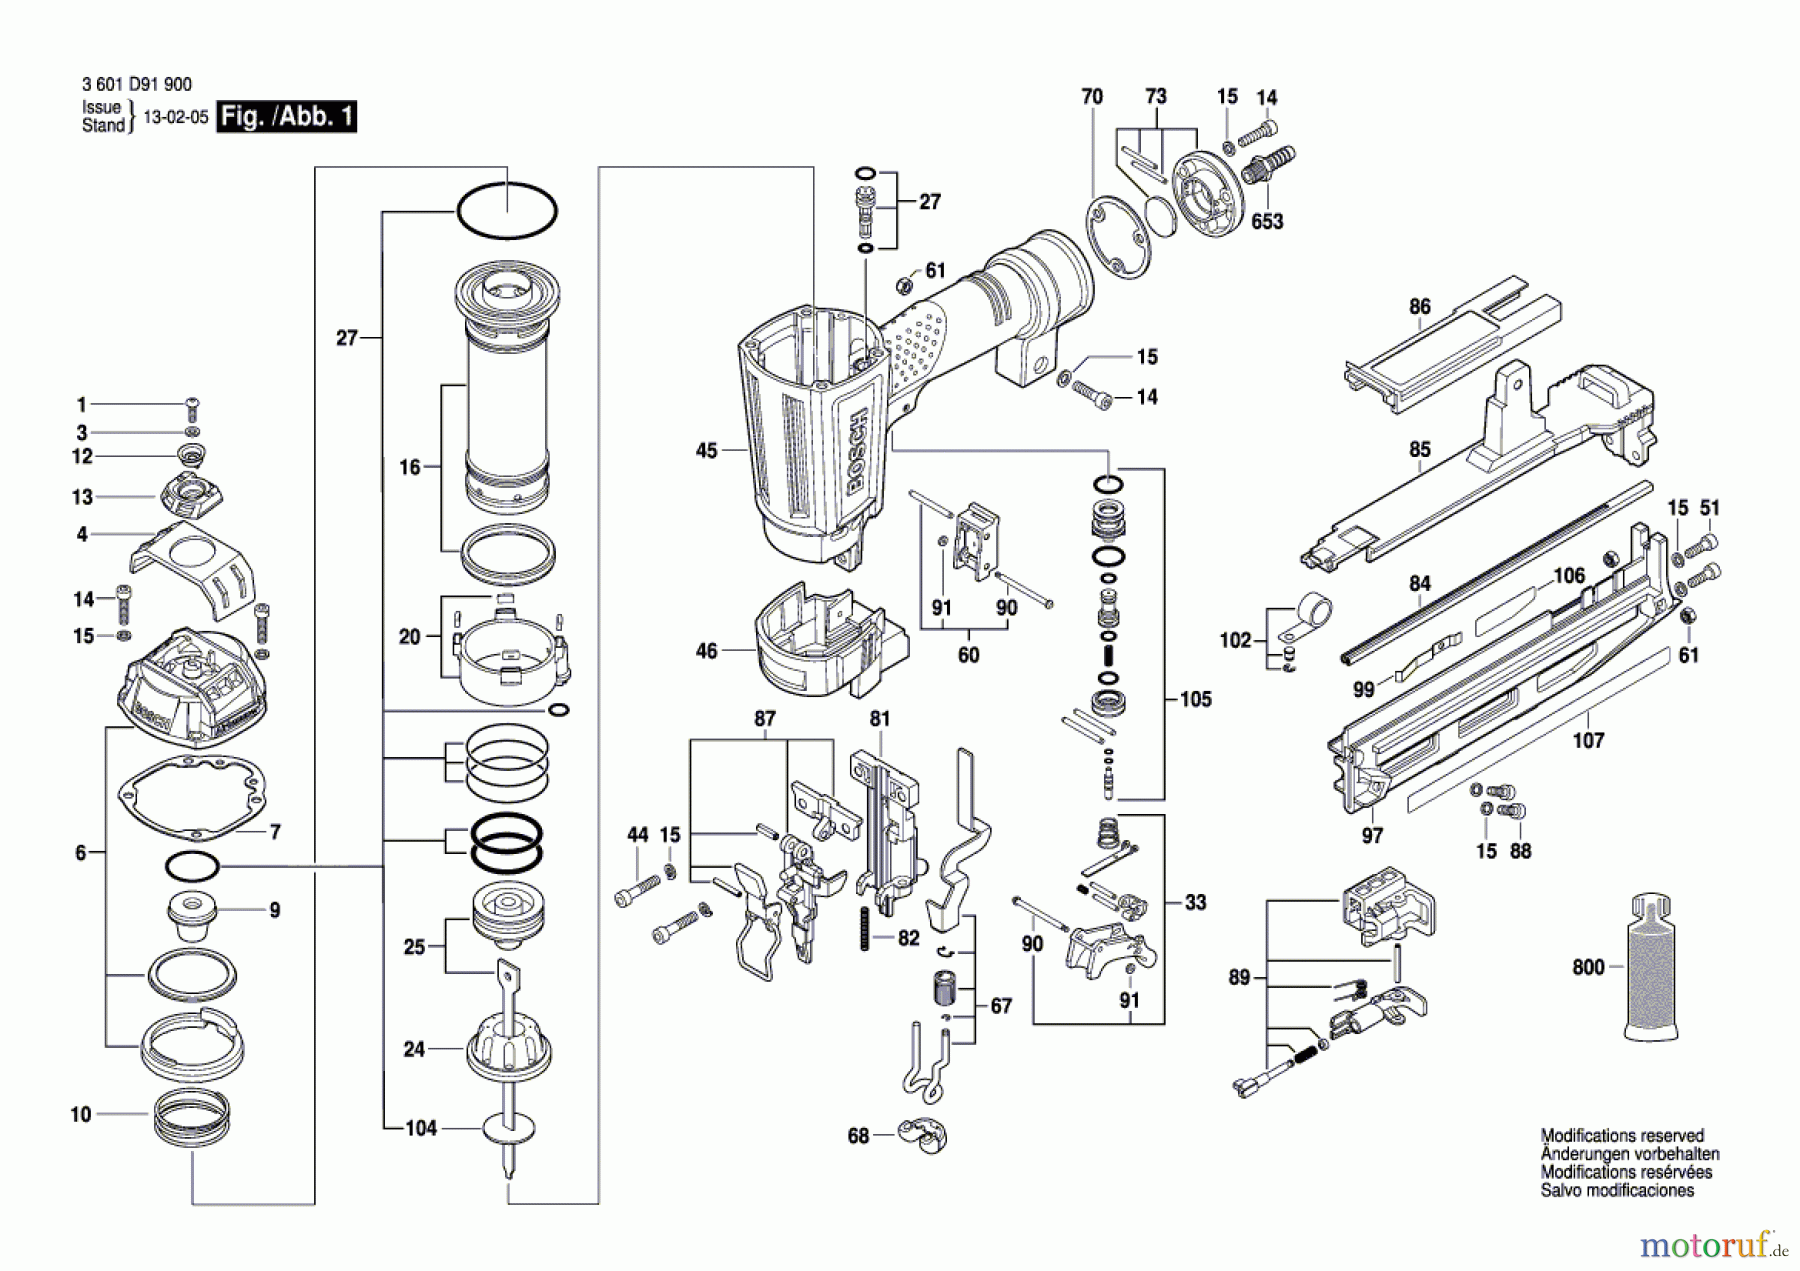  Bosch Werkzeug Druckluftnagler GSK 64 Seite 1